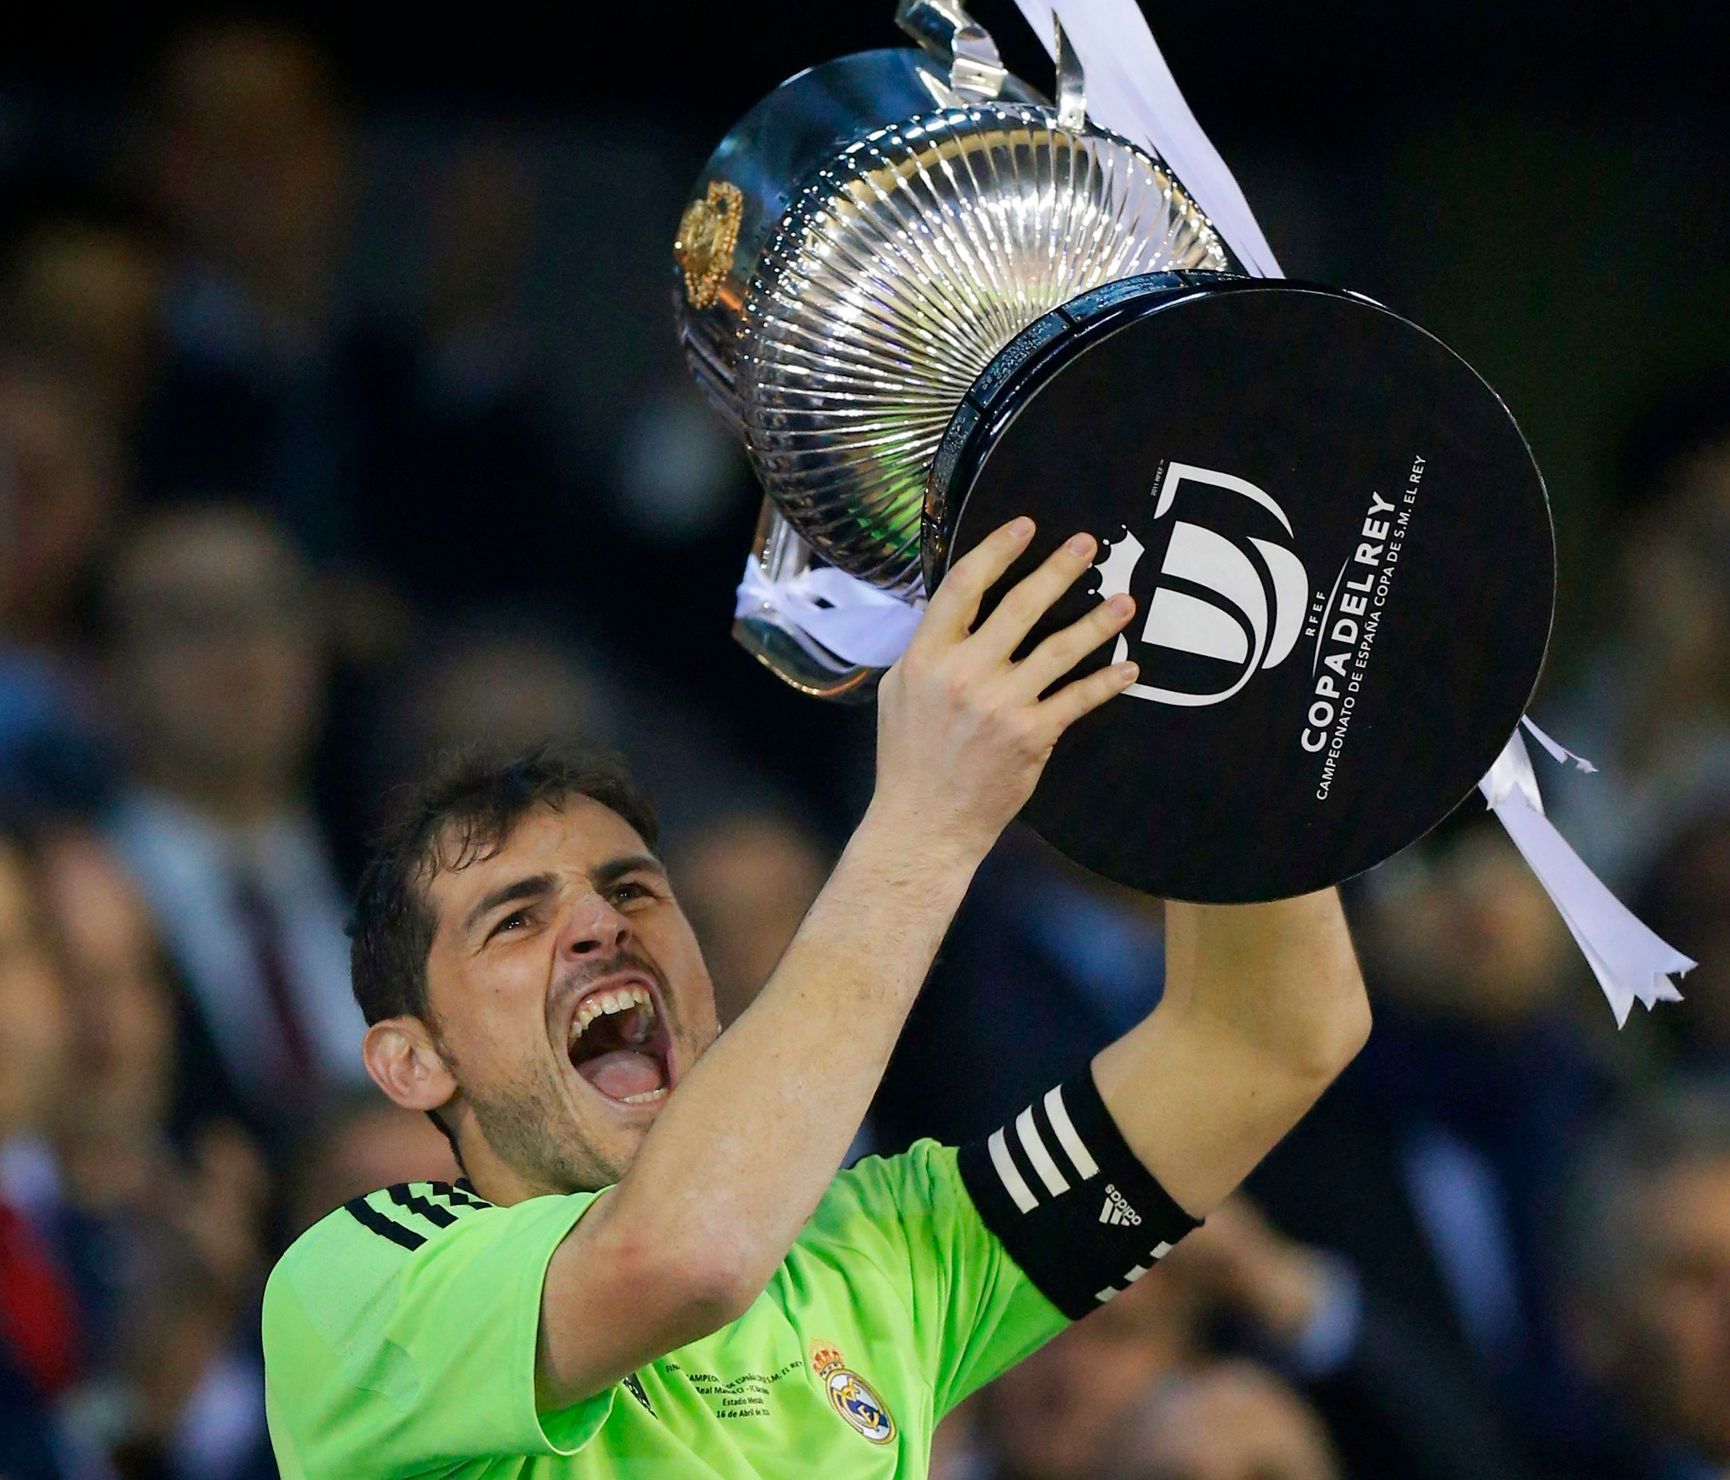 Iker Casillas se španělským pohárem